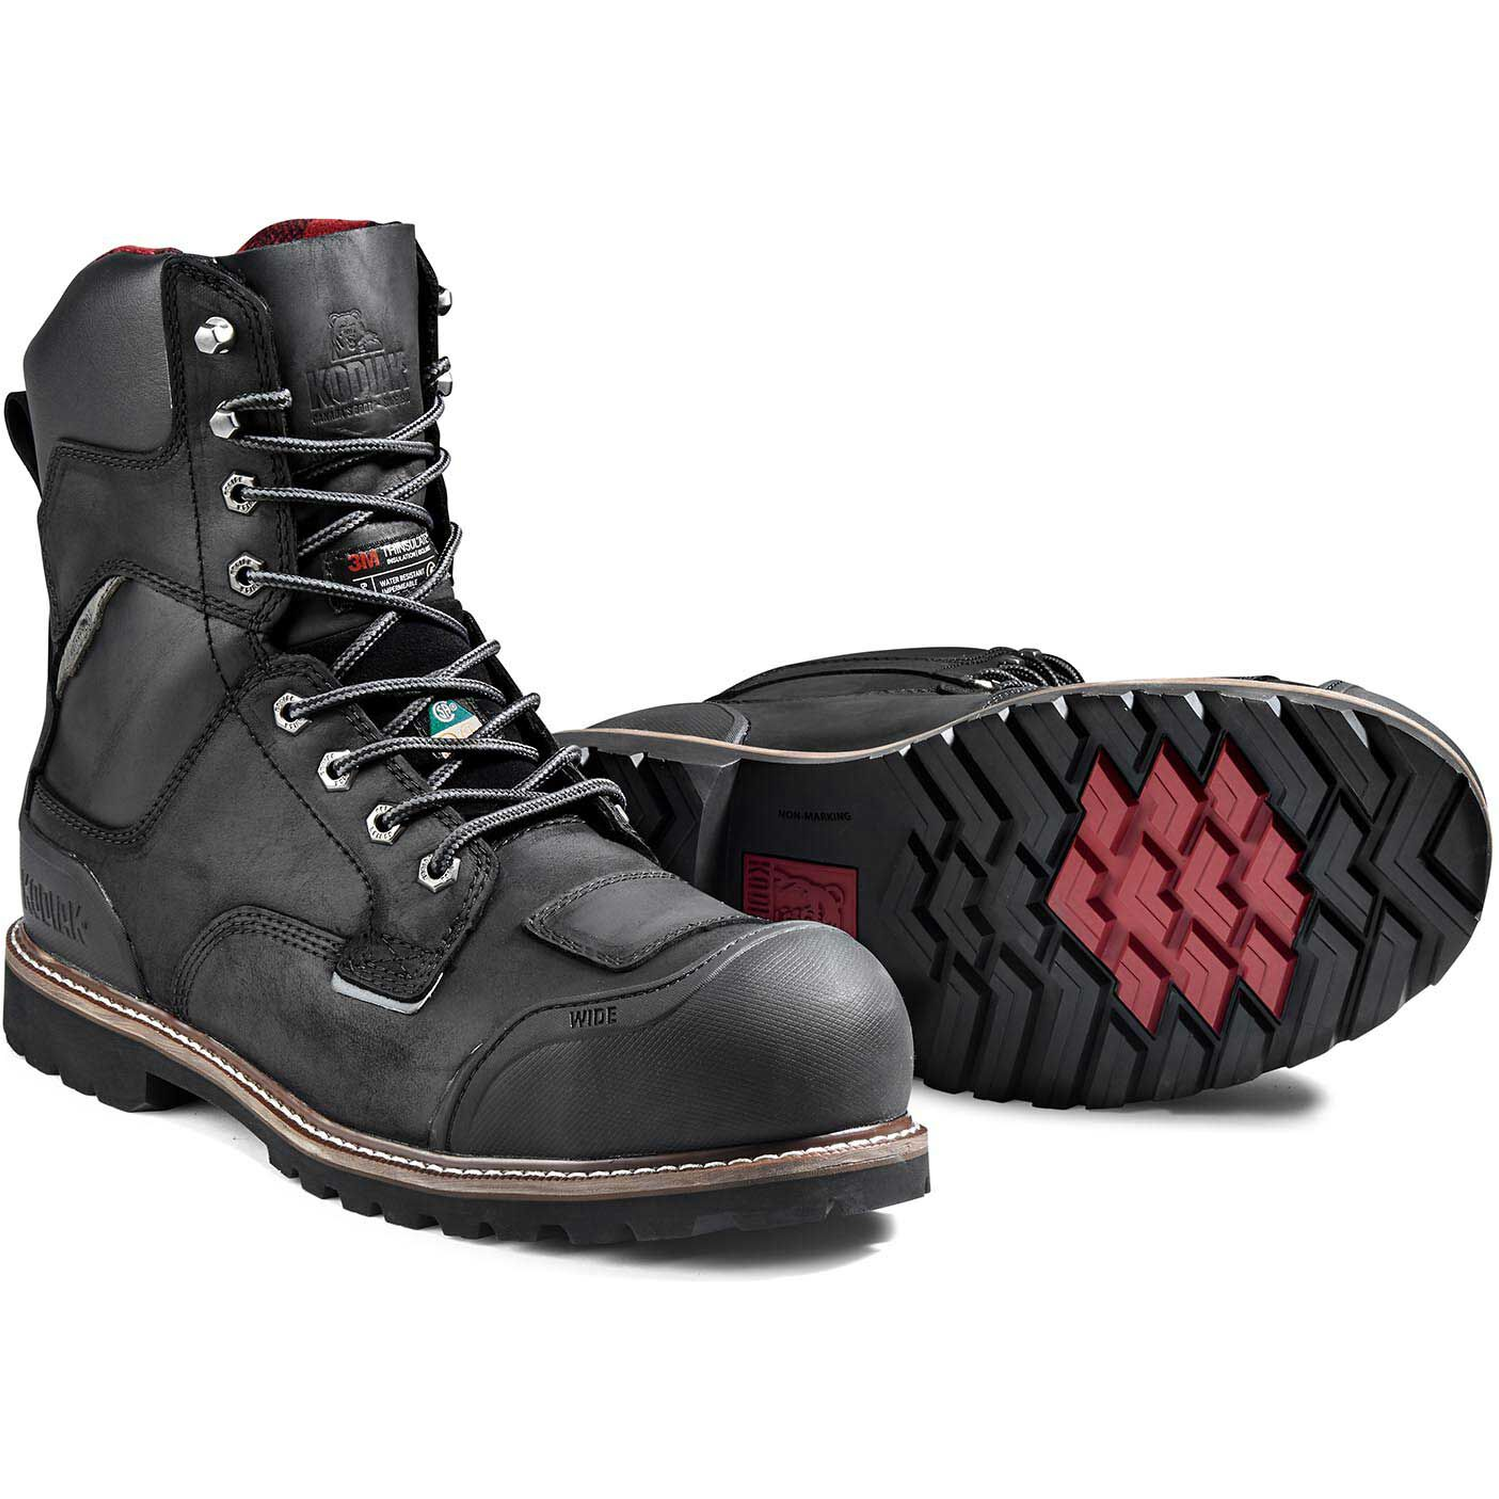 Kodiak Men's Generations Widebody 8" Comp Toe WP Work Boot -Black- 4TGCBK  - Overlook Boots